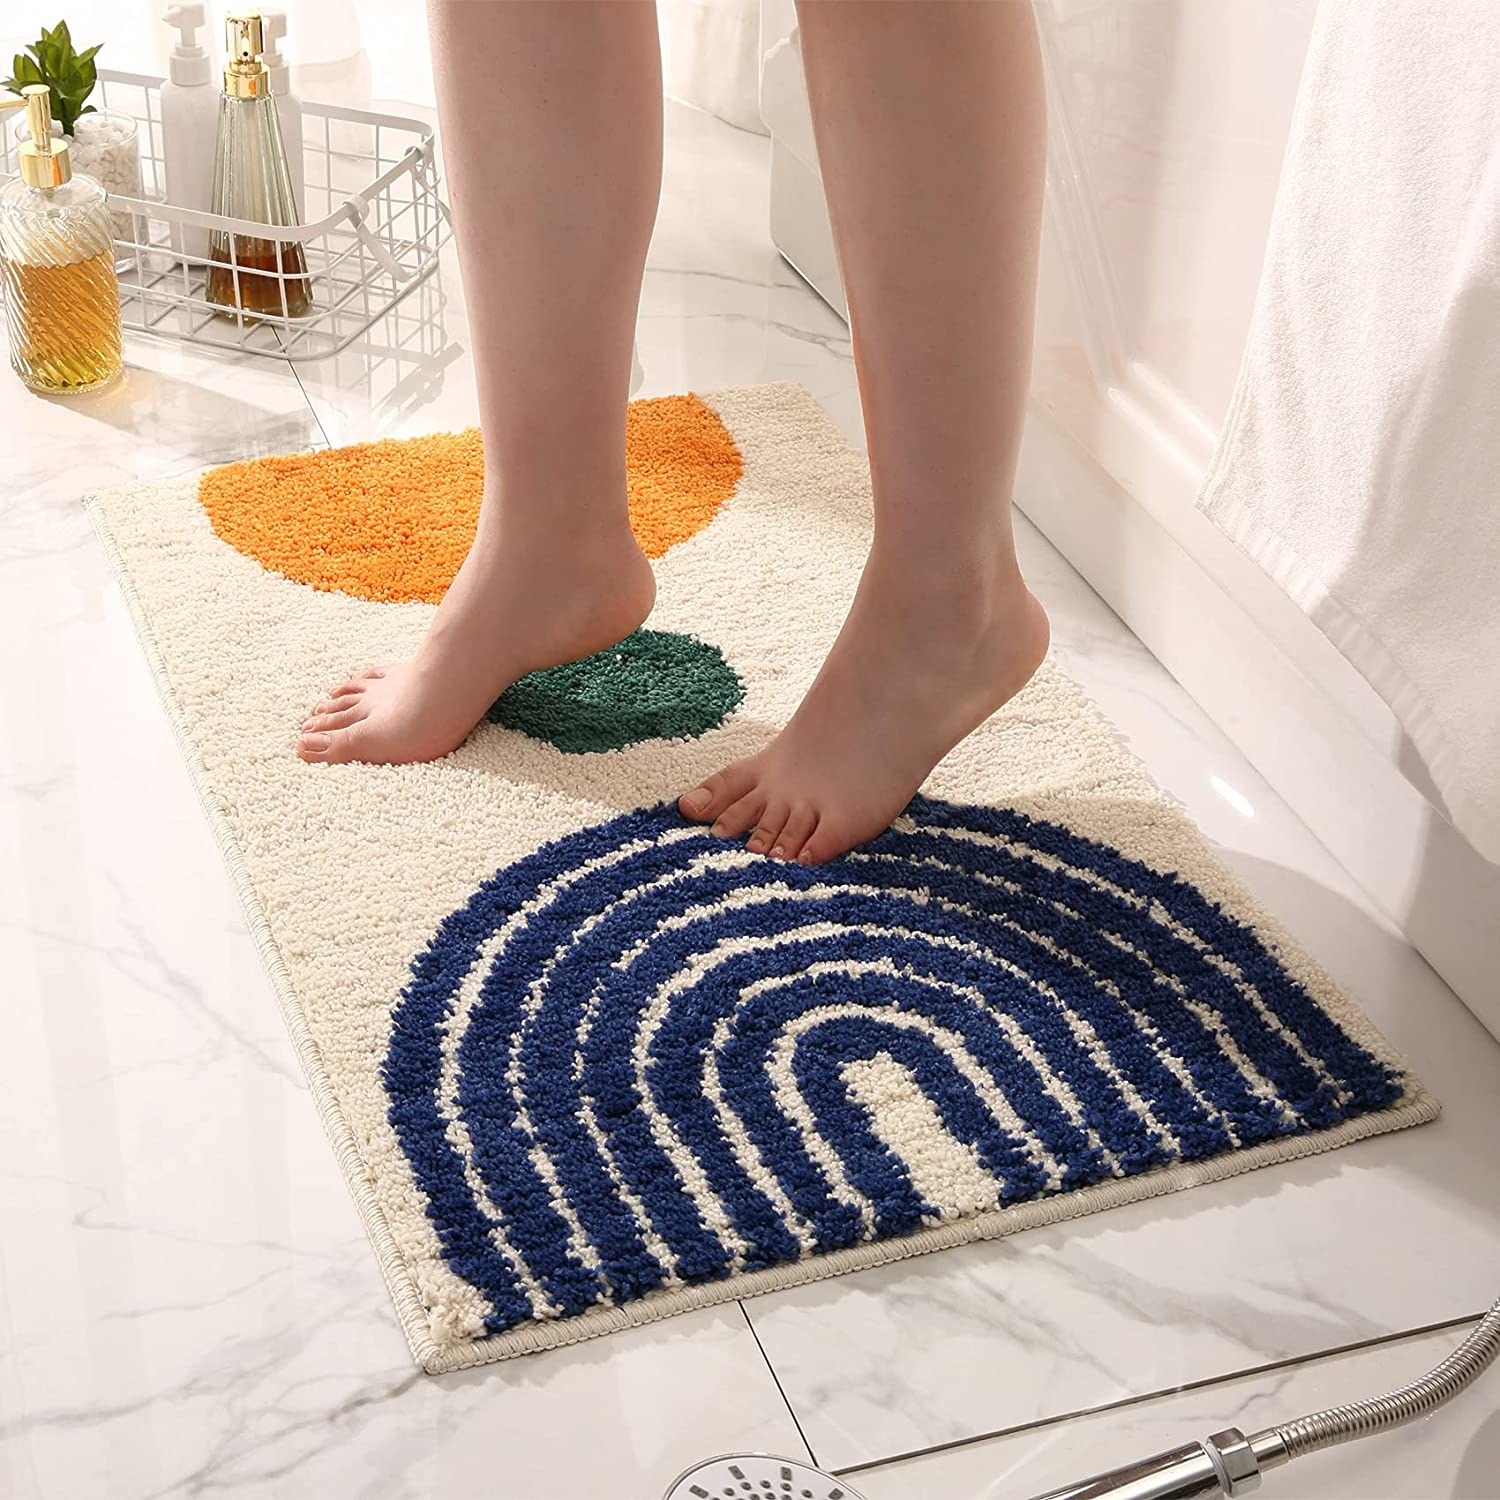 tan mat with two semi circles and a small circle